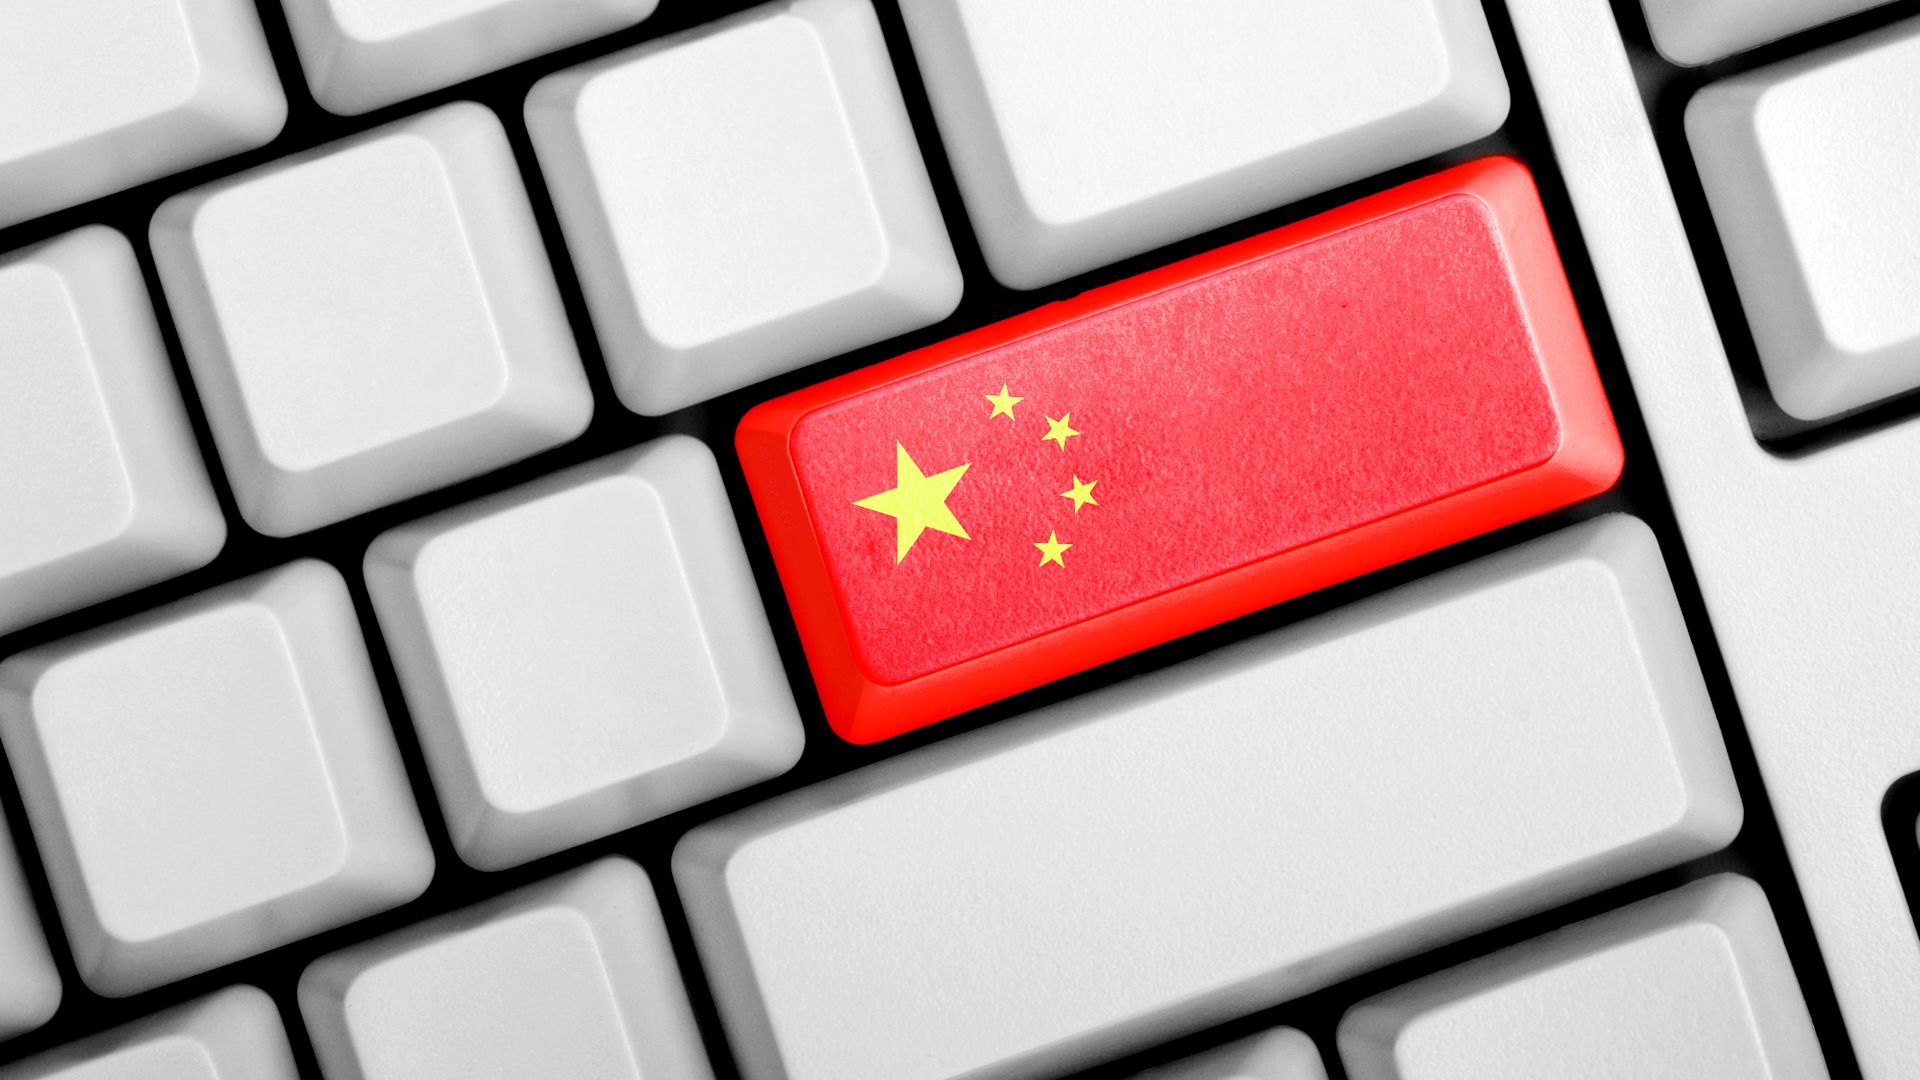 Правительство Китая откроет доступ к глобальному интернету, но только для признанных учёных и студентов